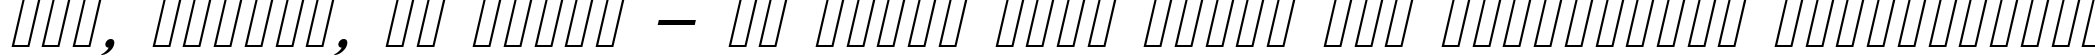 Пример написания шрифтом Cursive Serif текста на украинском